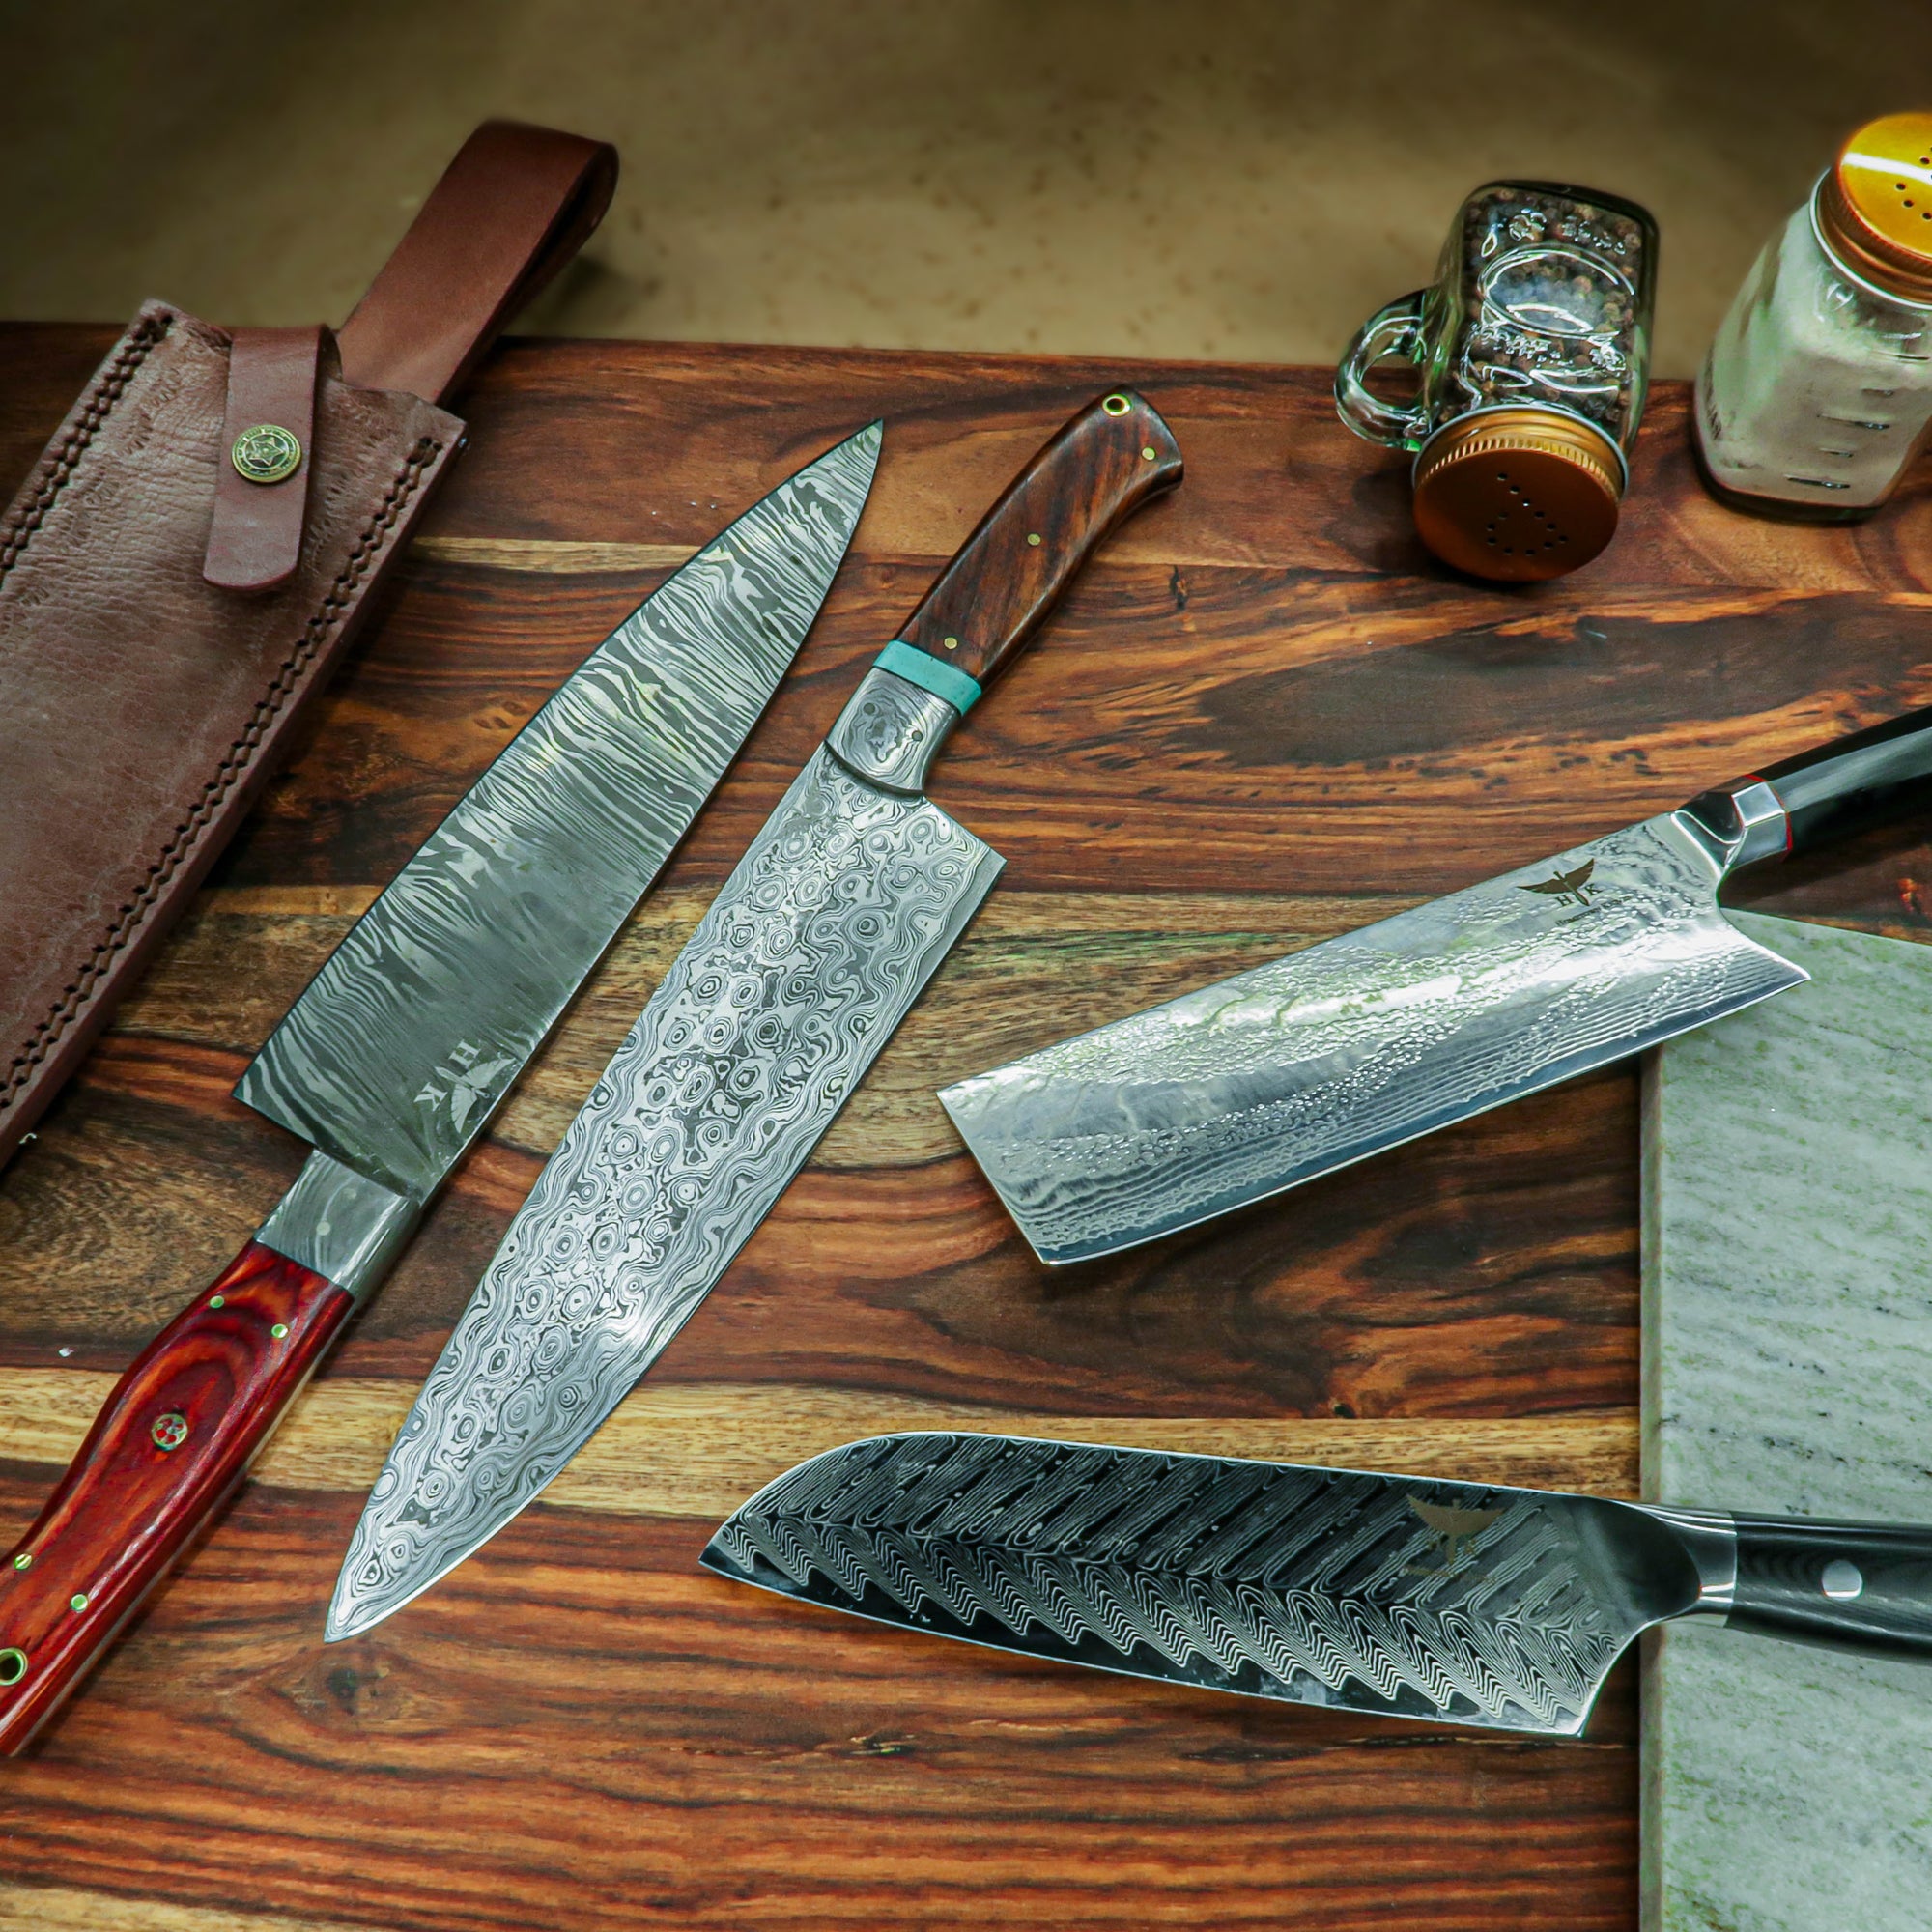 10 Best Hunting Knife Sets 2018 